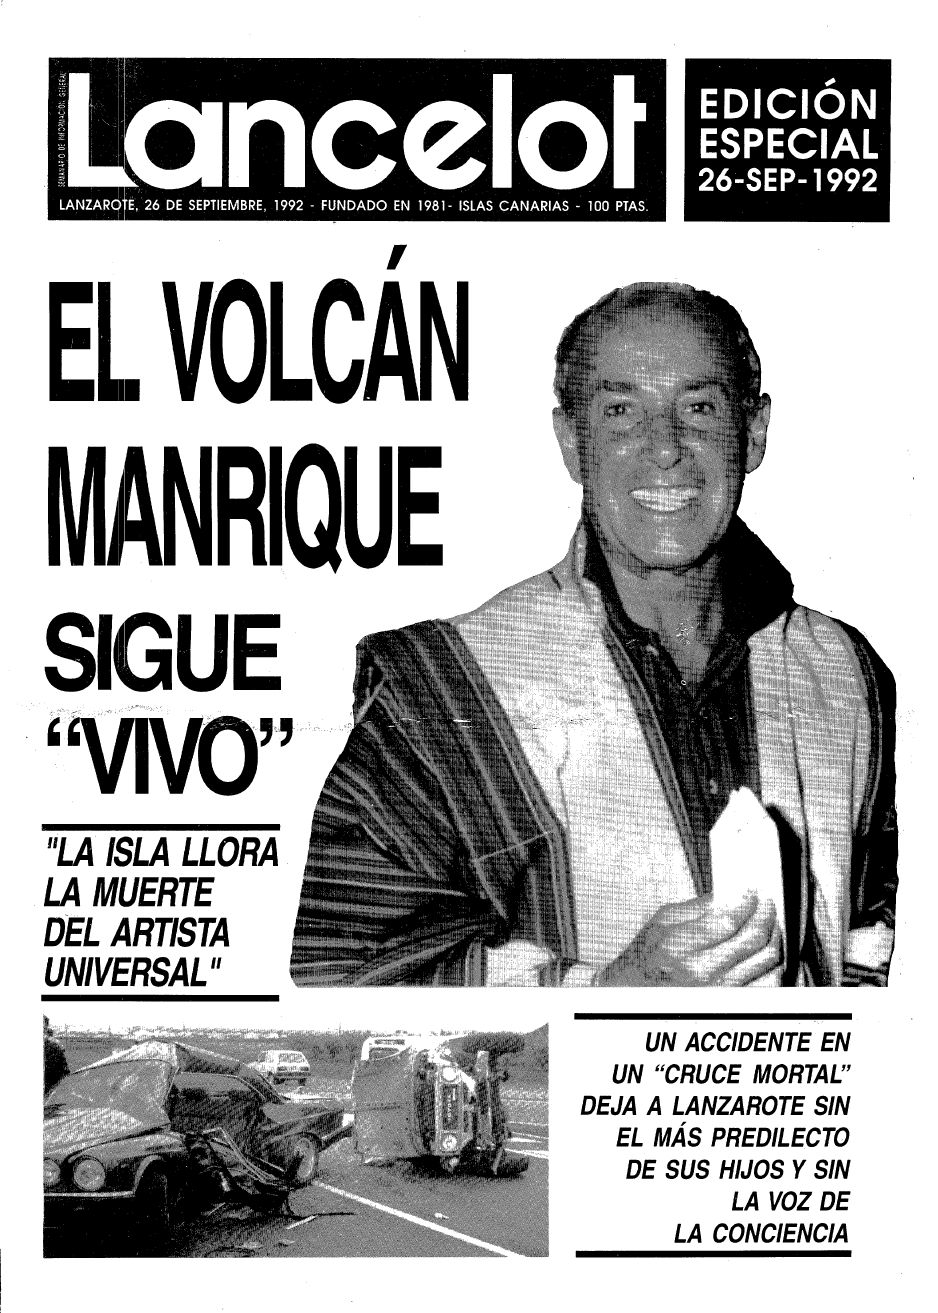 Edición especial del semanario Lancelot con motivo de la muerte de César Manrique